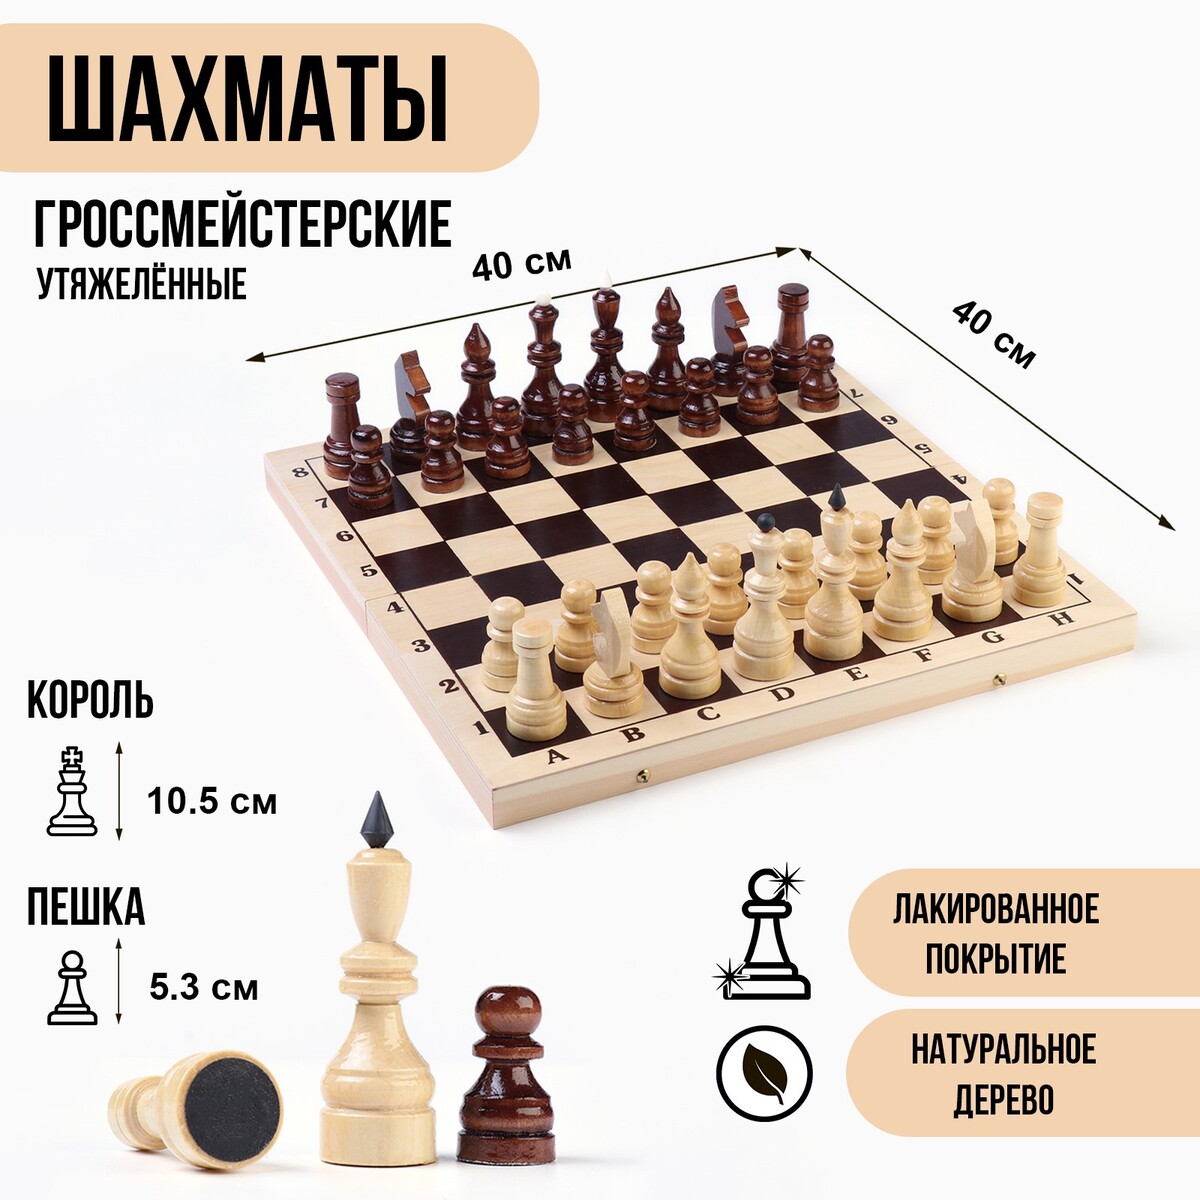 Шахматы гроссмейстерские, турнирные, утяжеленные, 40х40 см, король h=10.5 см, пешка 5.3 см голый король